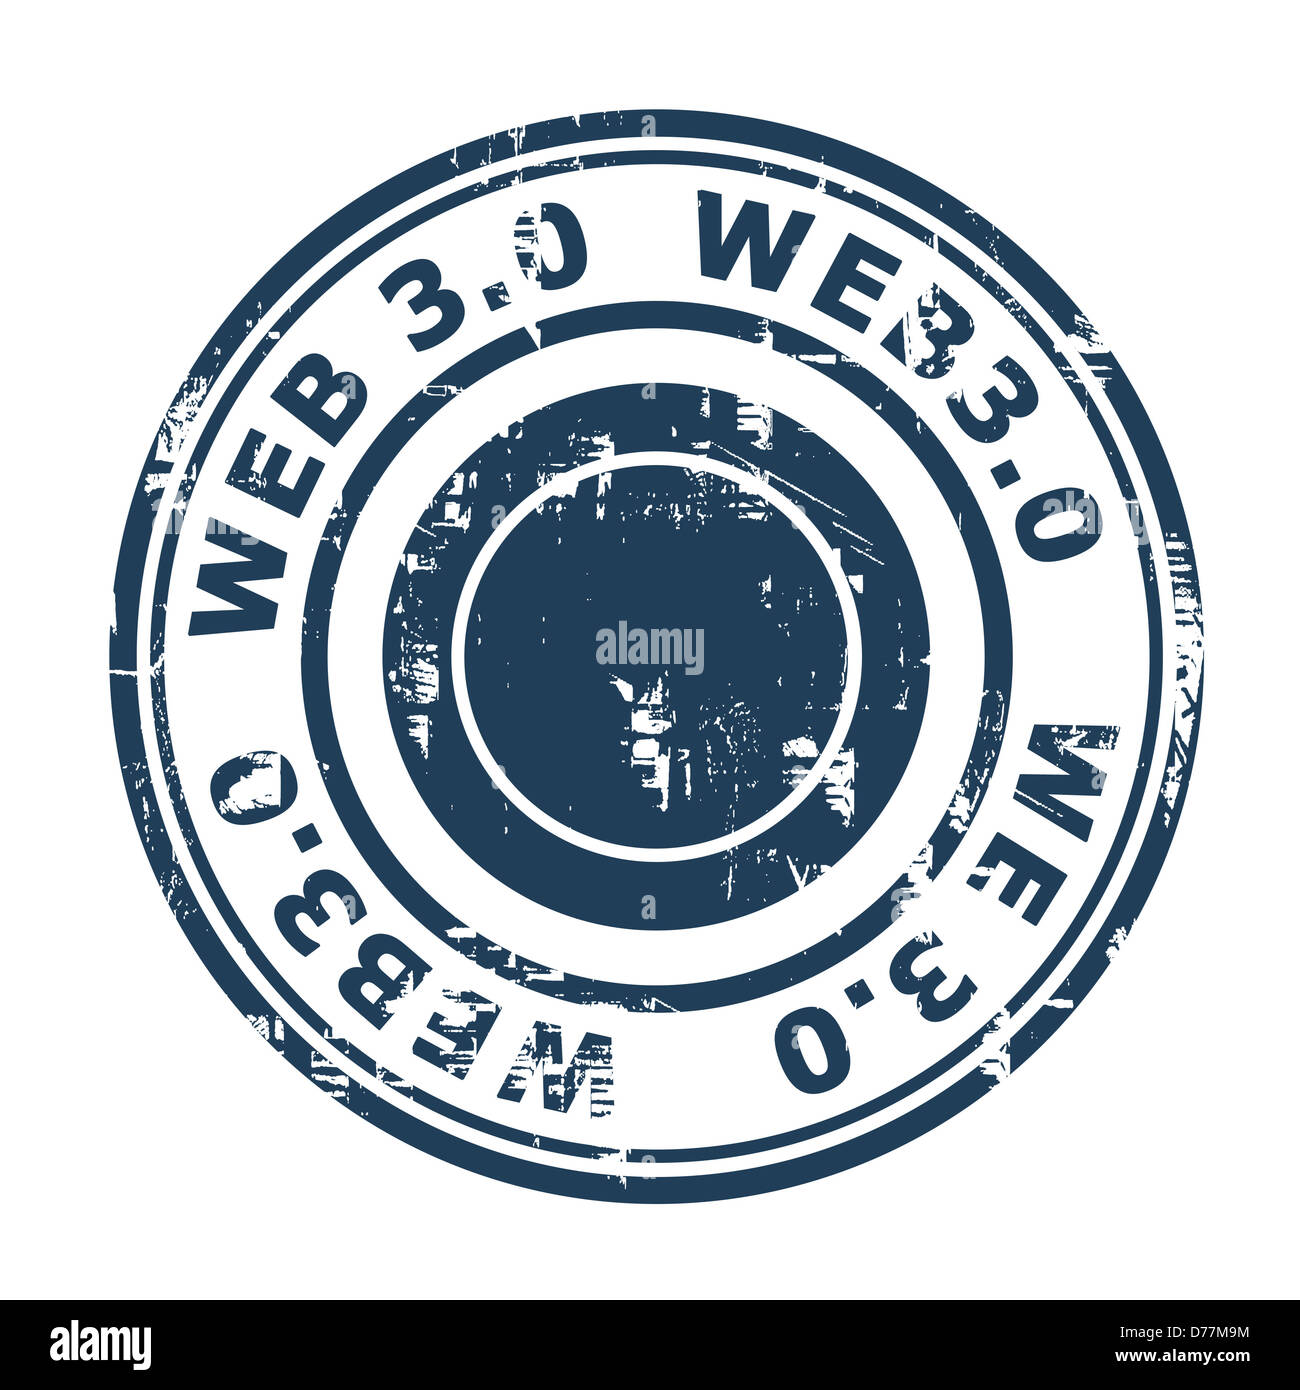 Web 3.0 Stempel isoliert auf einem weißen Hintergrund. Stockfoto